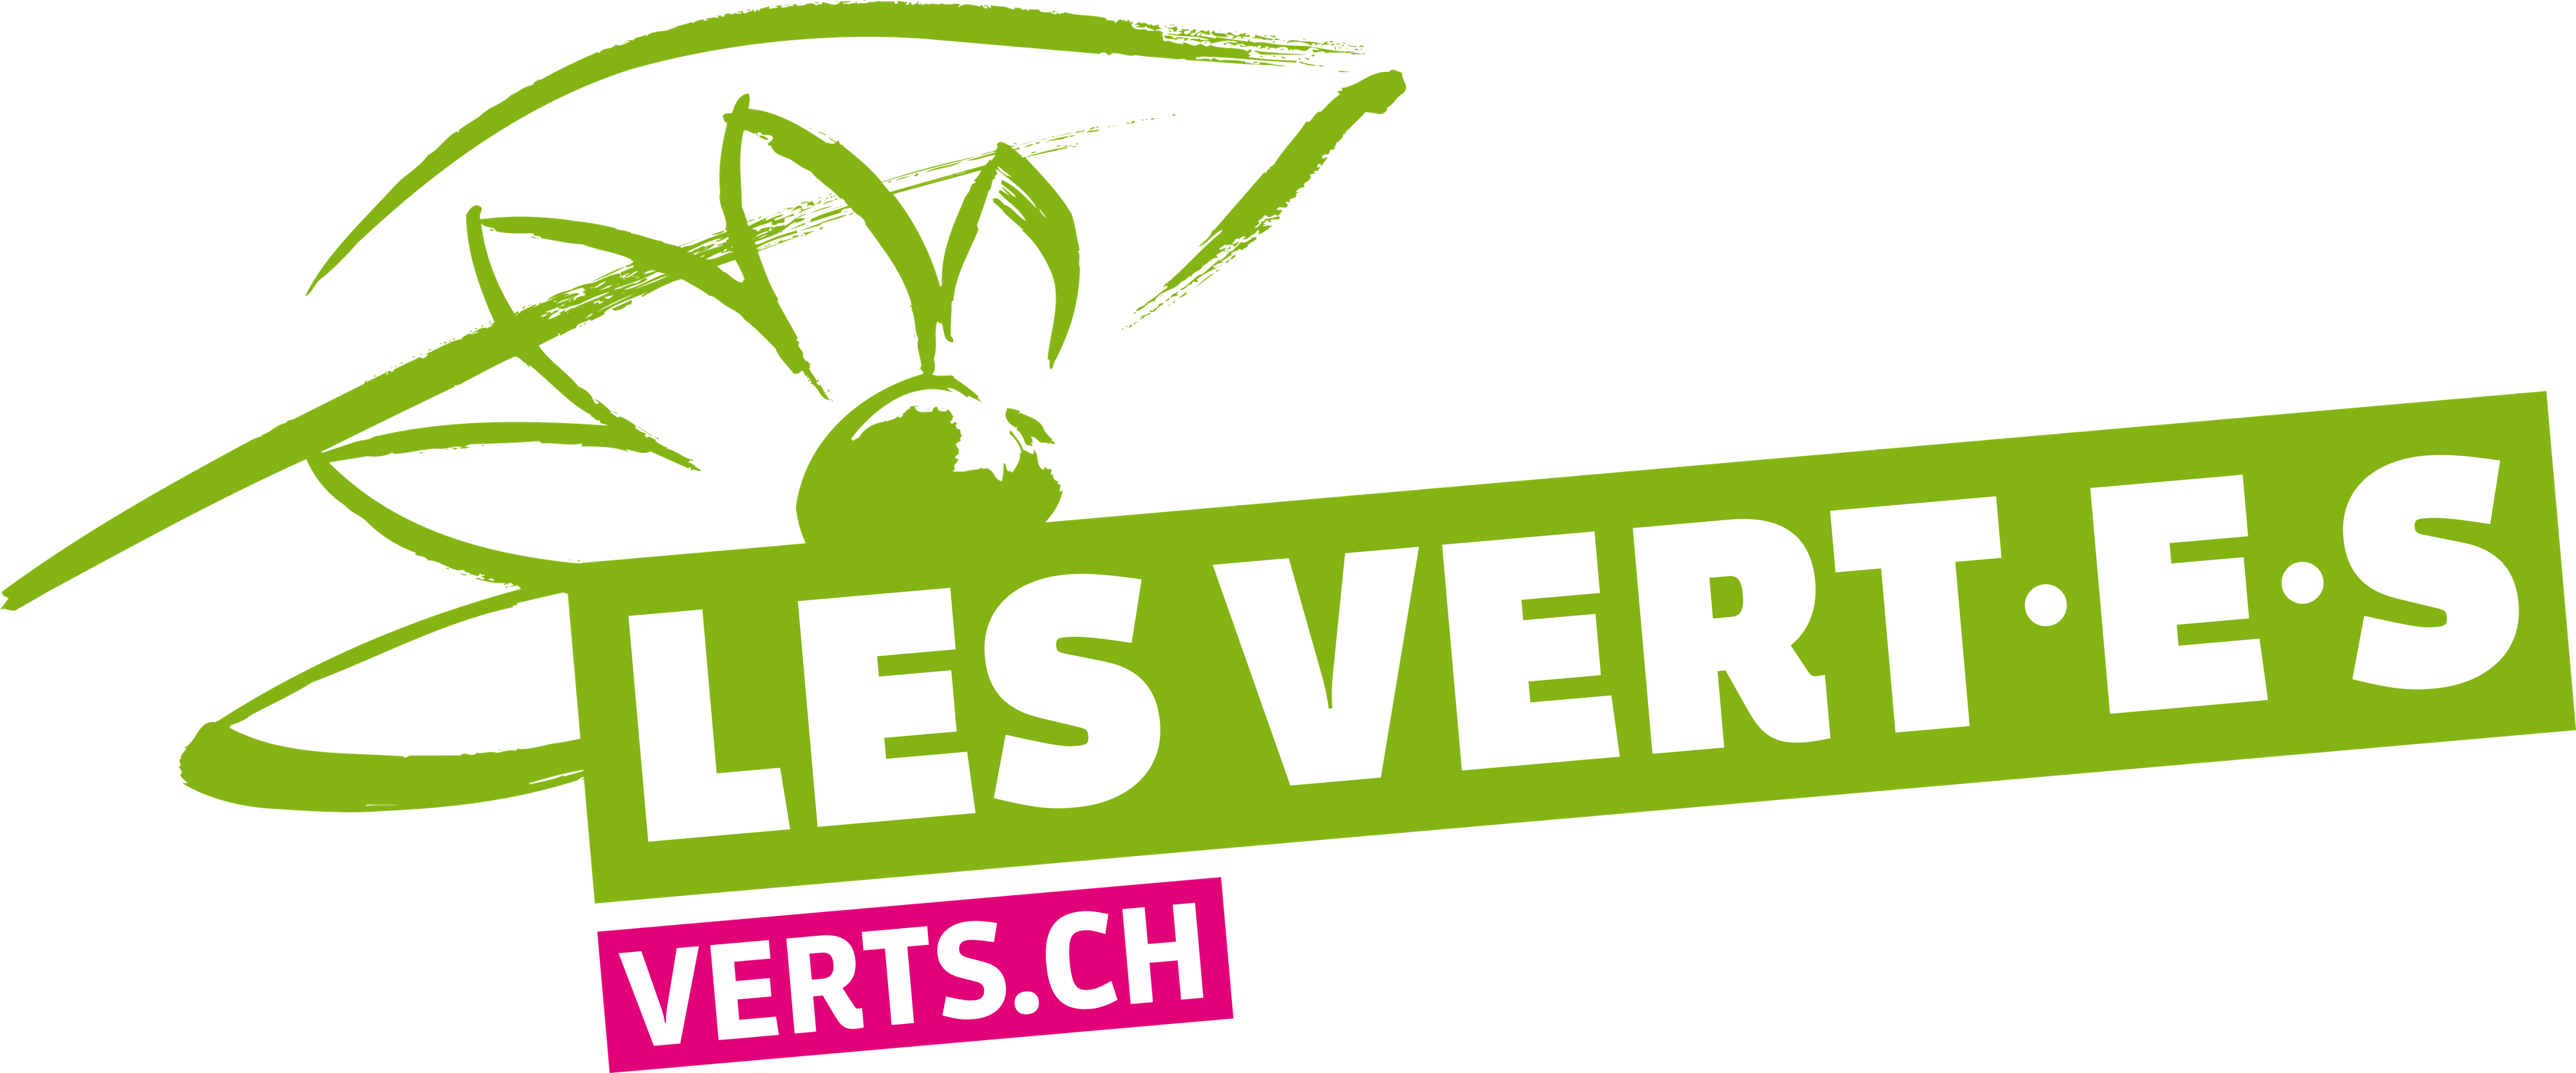 Les Vert.e.s suisses [Les Vert.e.s]